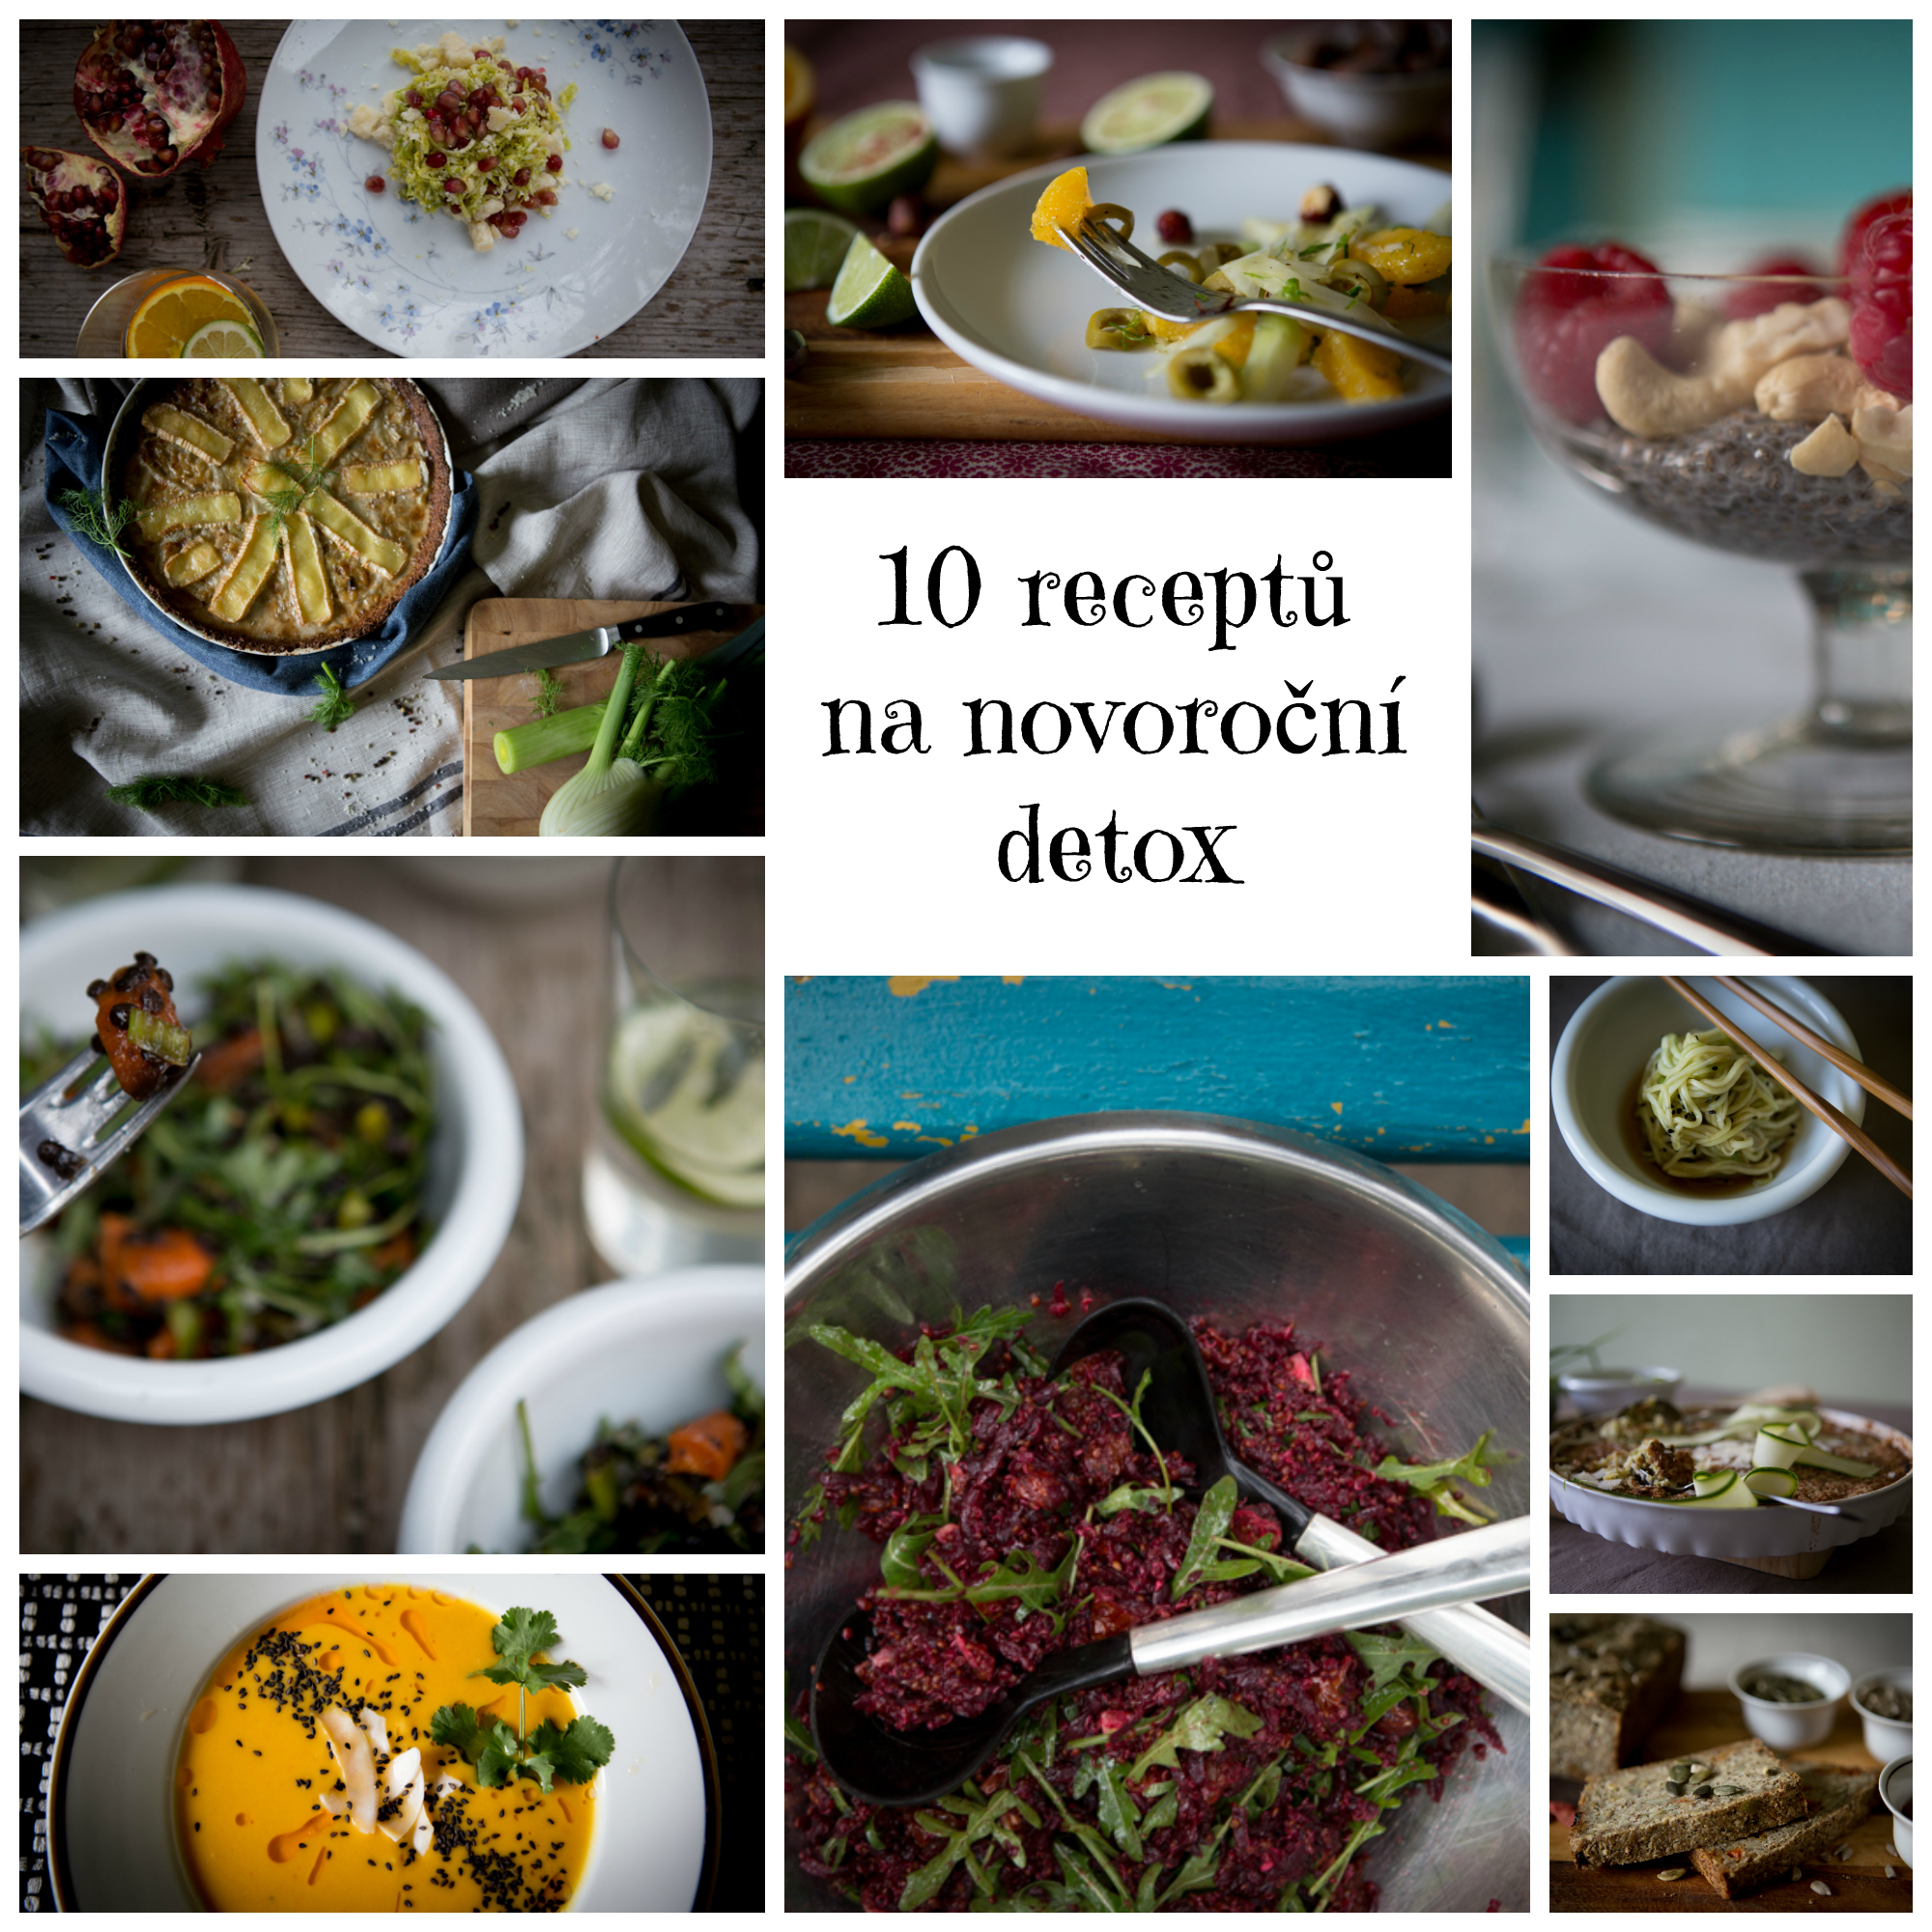 10_receptu_detox